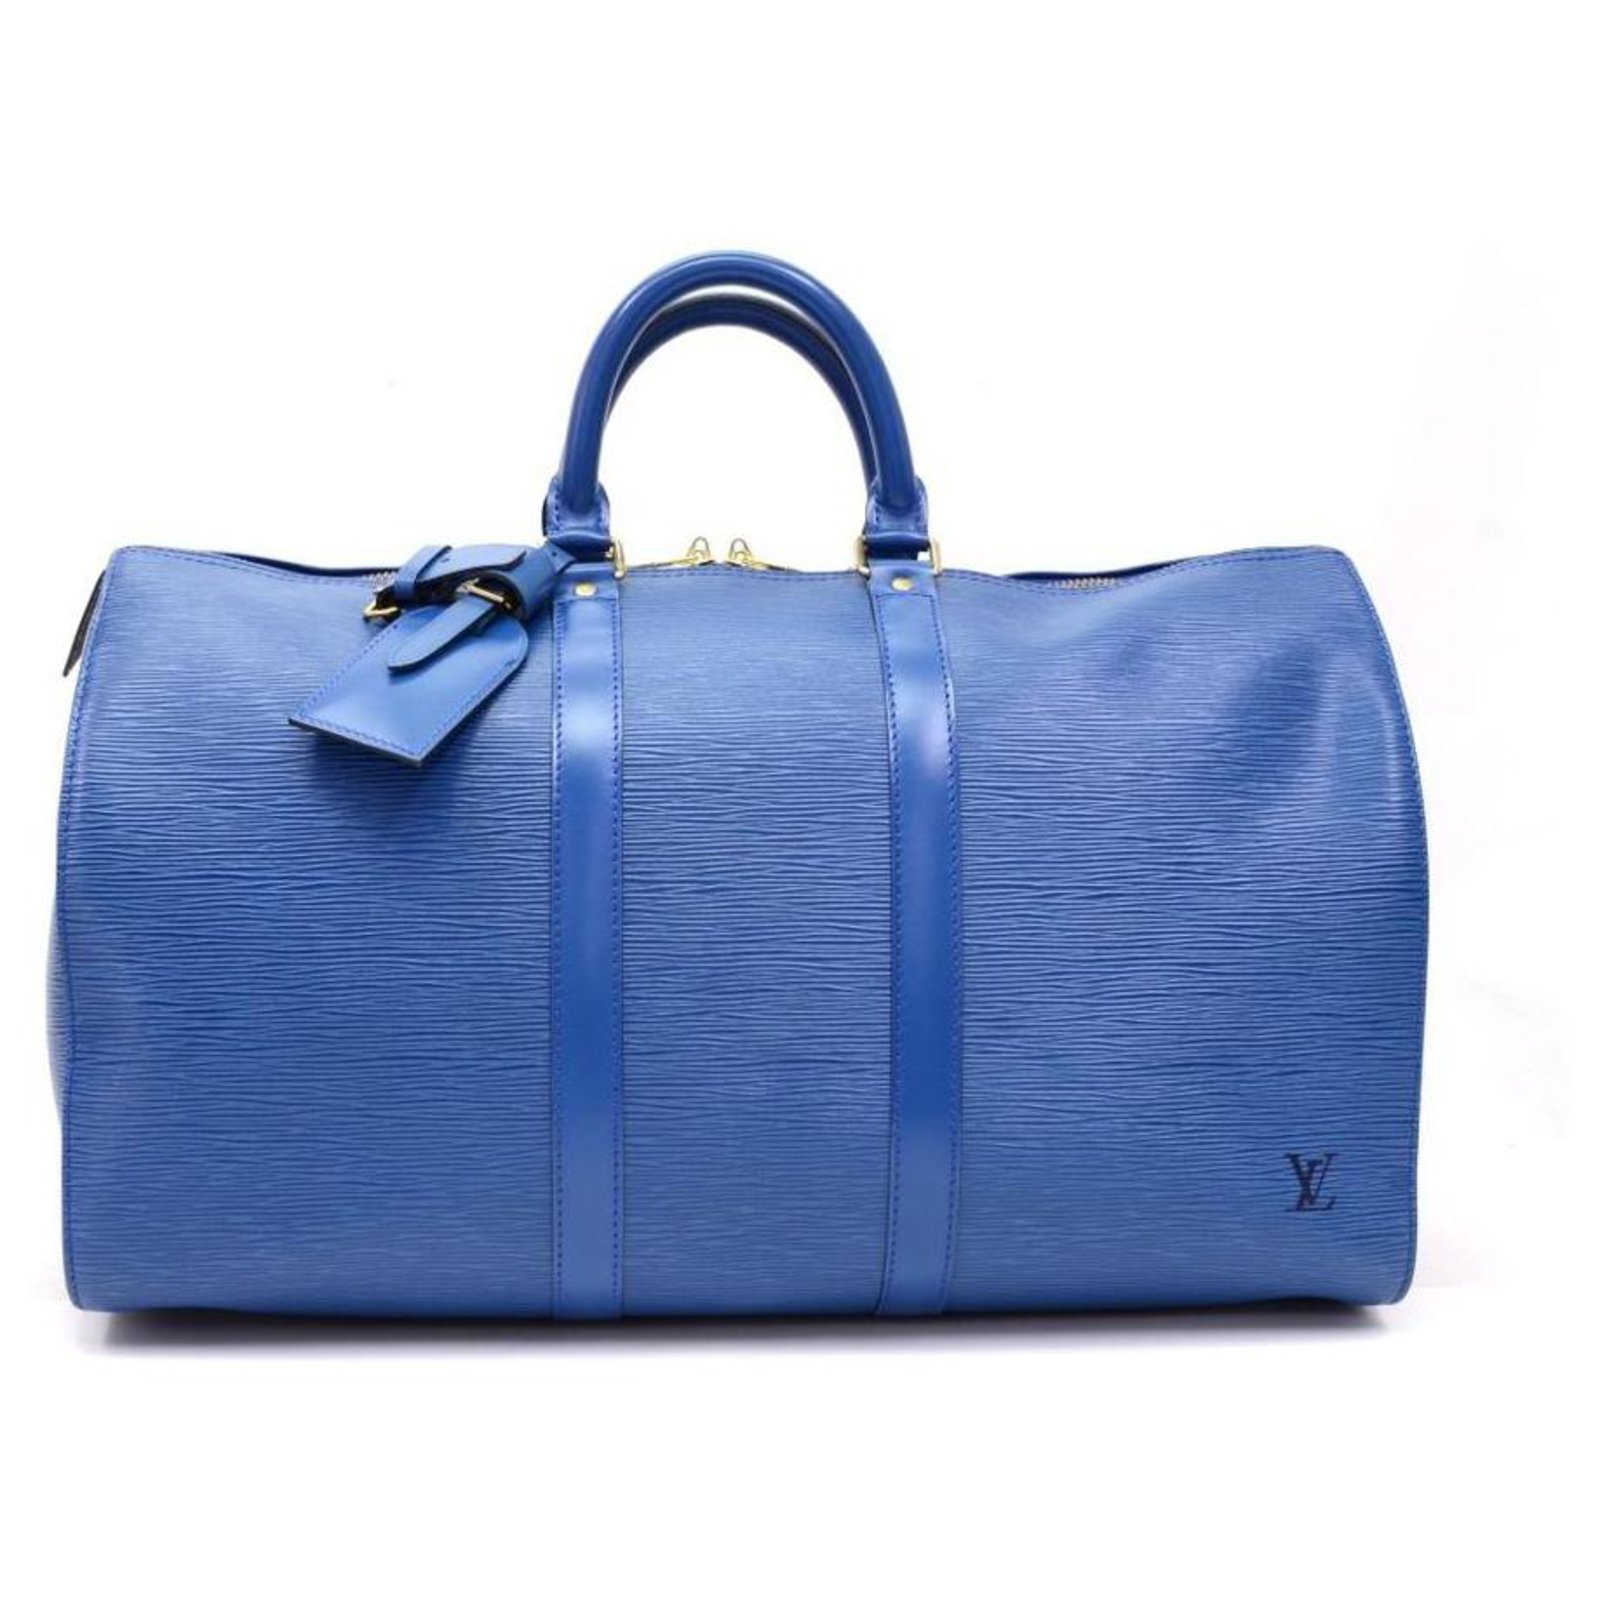 lv duffle bag blue